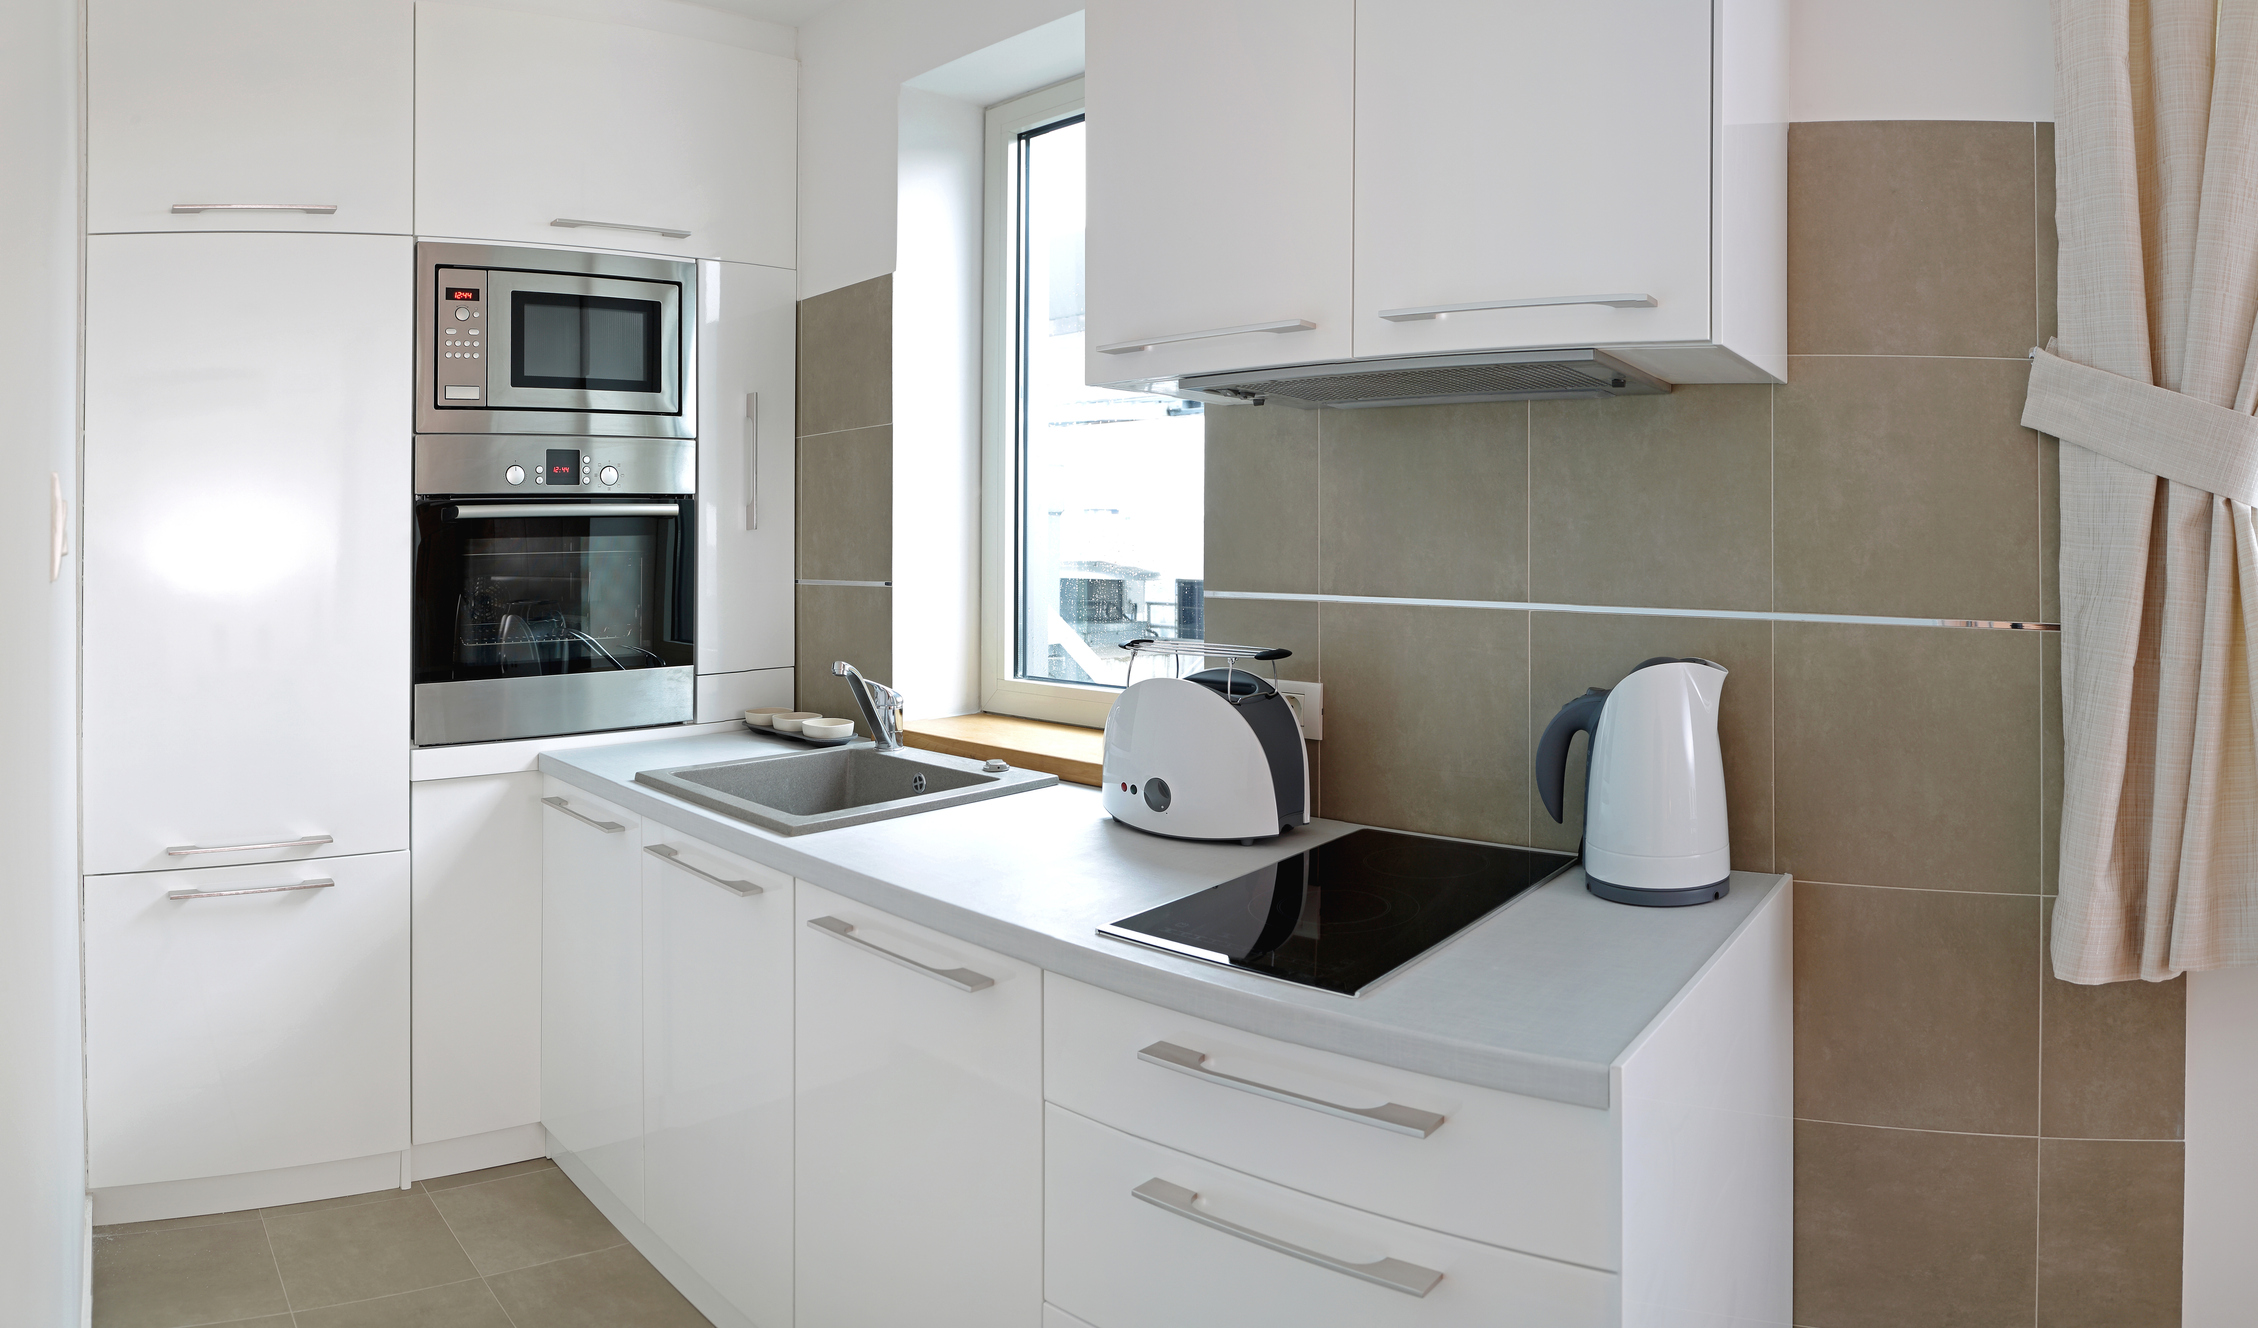 Imagem de uma cozinha toda branca com azulejos cinza na parede.